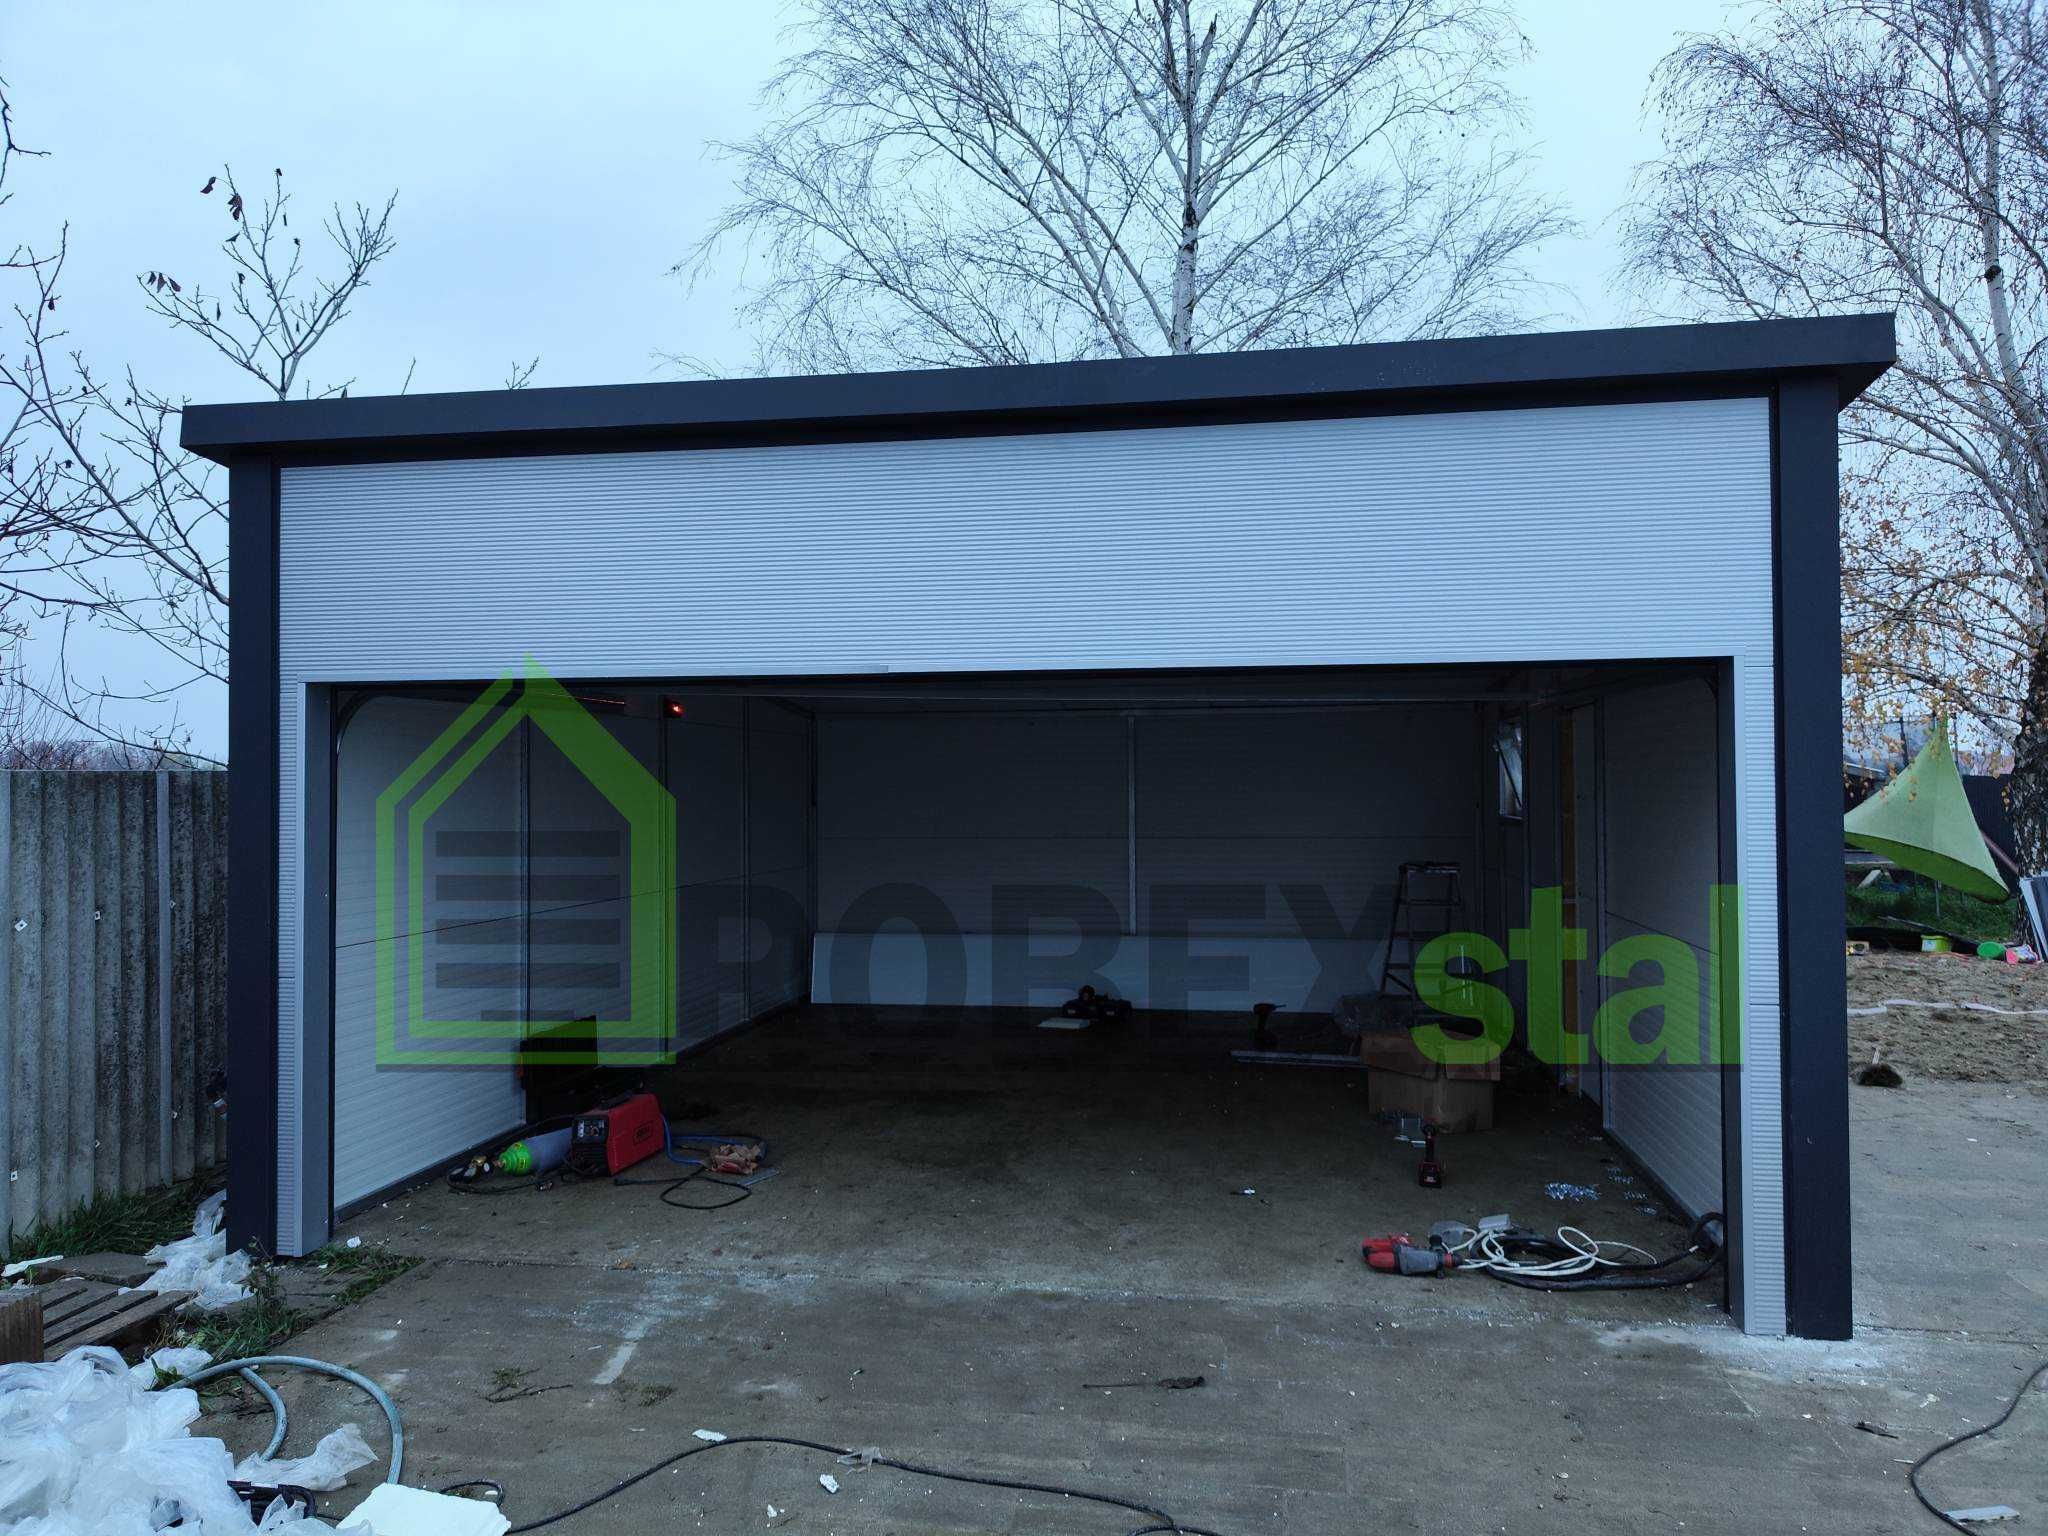 Garaż ocieplany garaż z płyt warstwowych garaż z bramą segmentową 5x6m